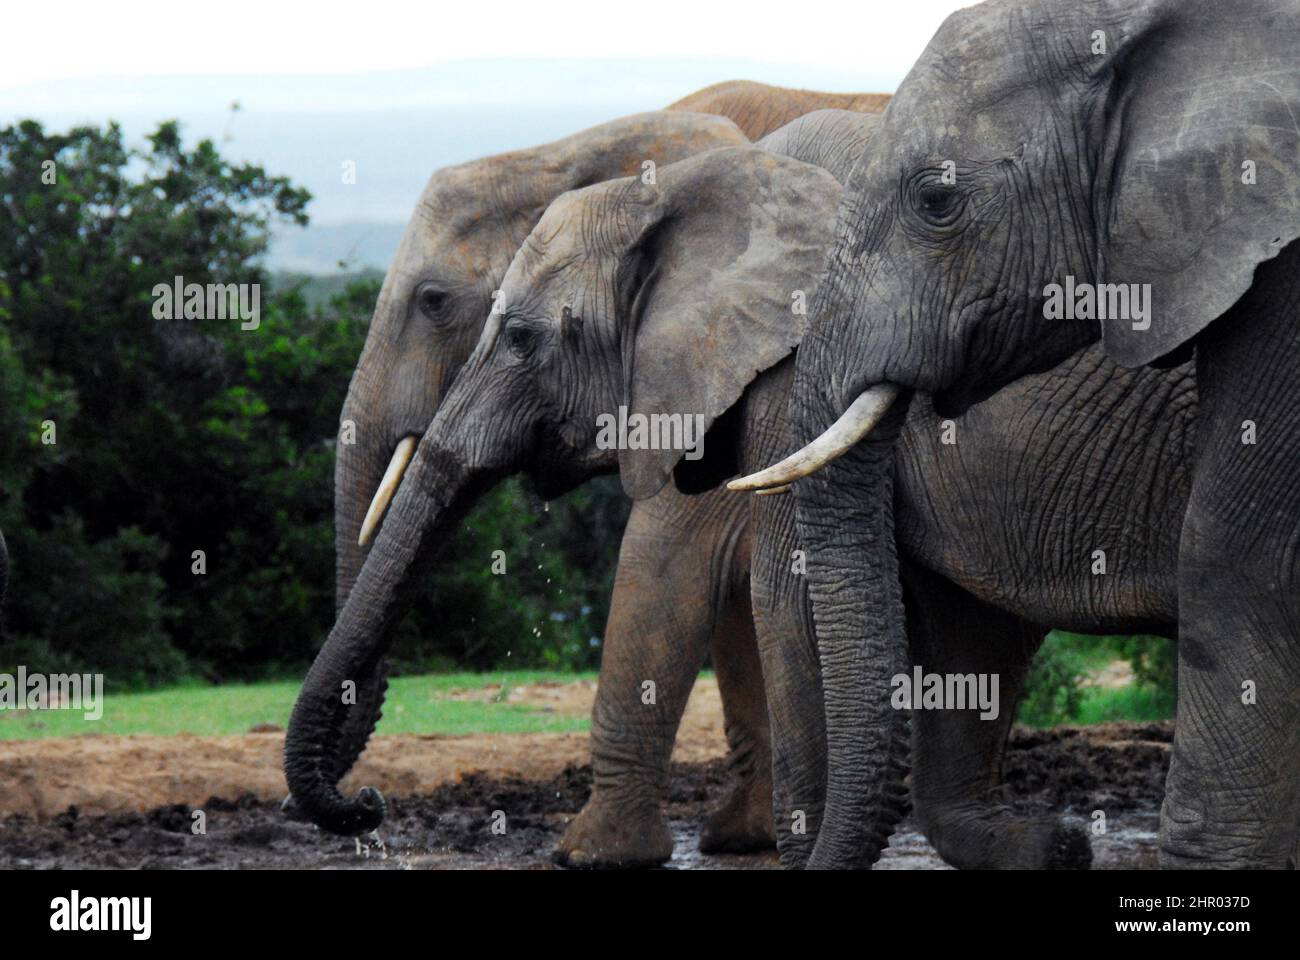 Nahaufnahme einer Reihe von drei wilden Elefanten, die an einem Wasserloch in der Wildnis trinken. Gedreht auf Safari in Südafrika. Stockfoto